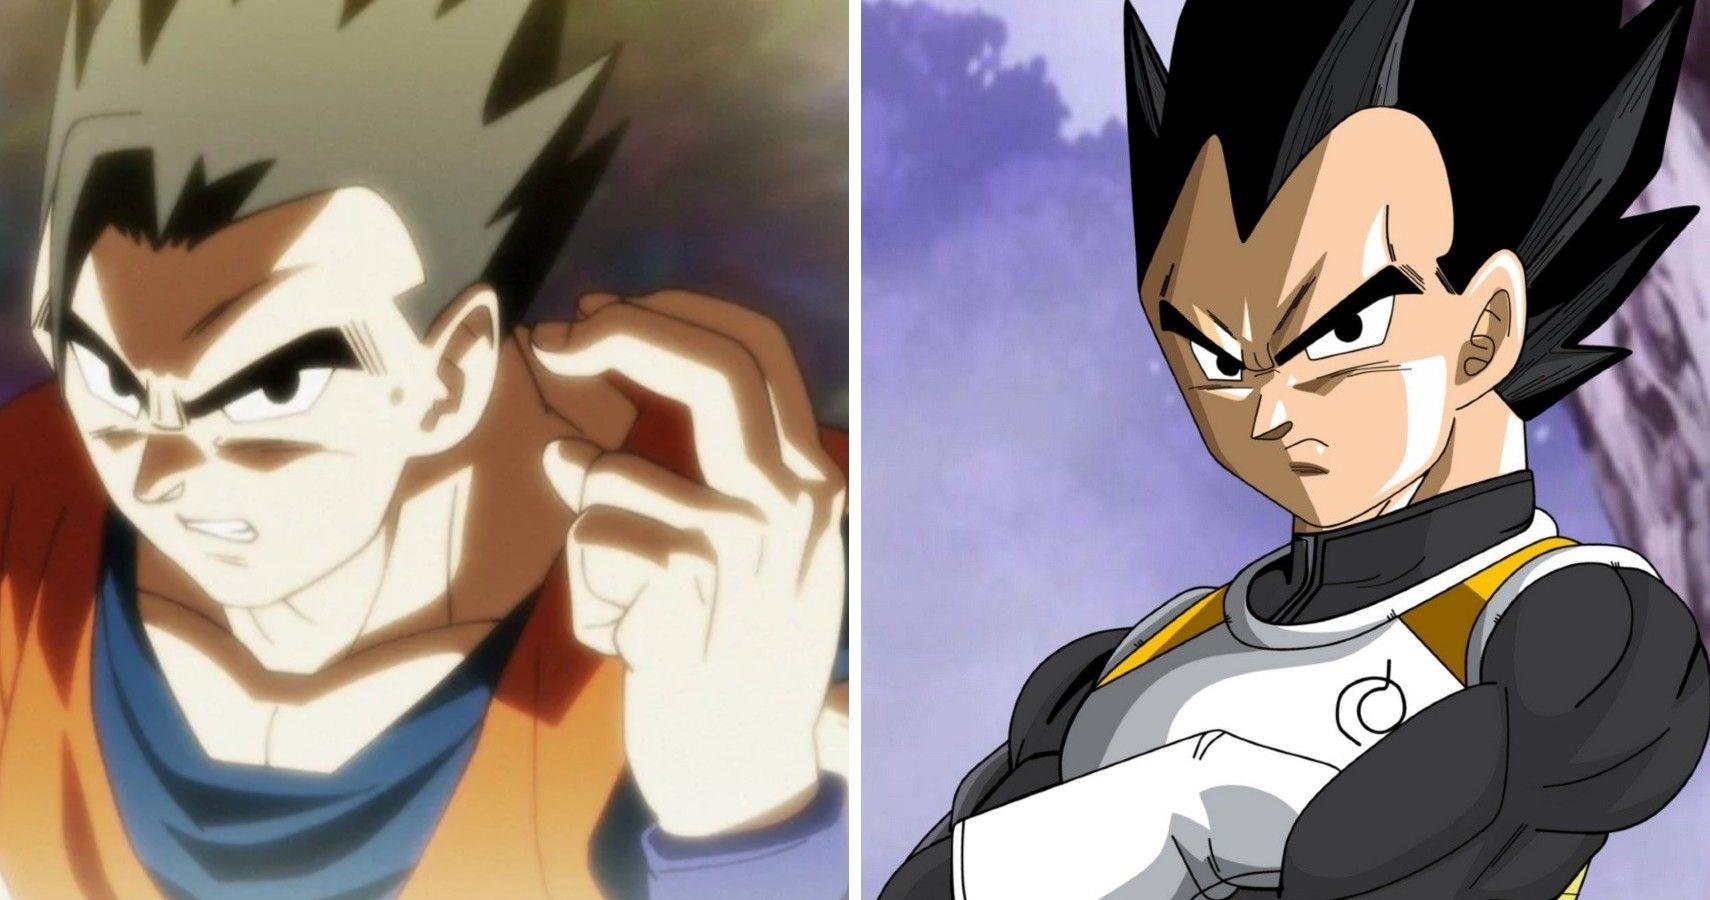 Dragon Ball: Giữa Vegeta và Gohan, ai xứng đáng hơn để thay thế Goku làm nhân vật chính?